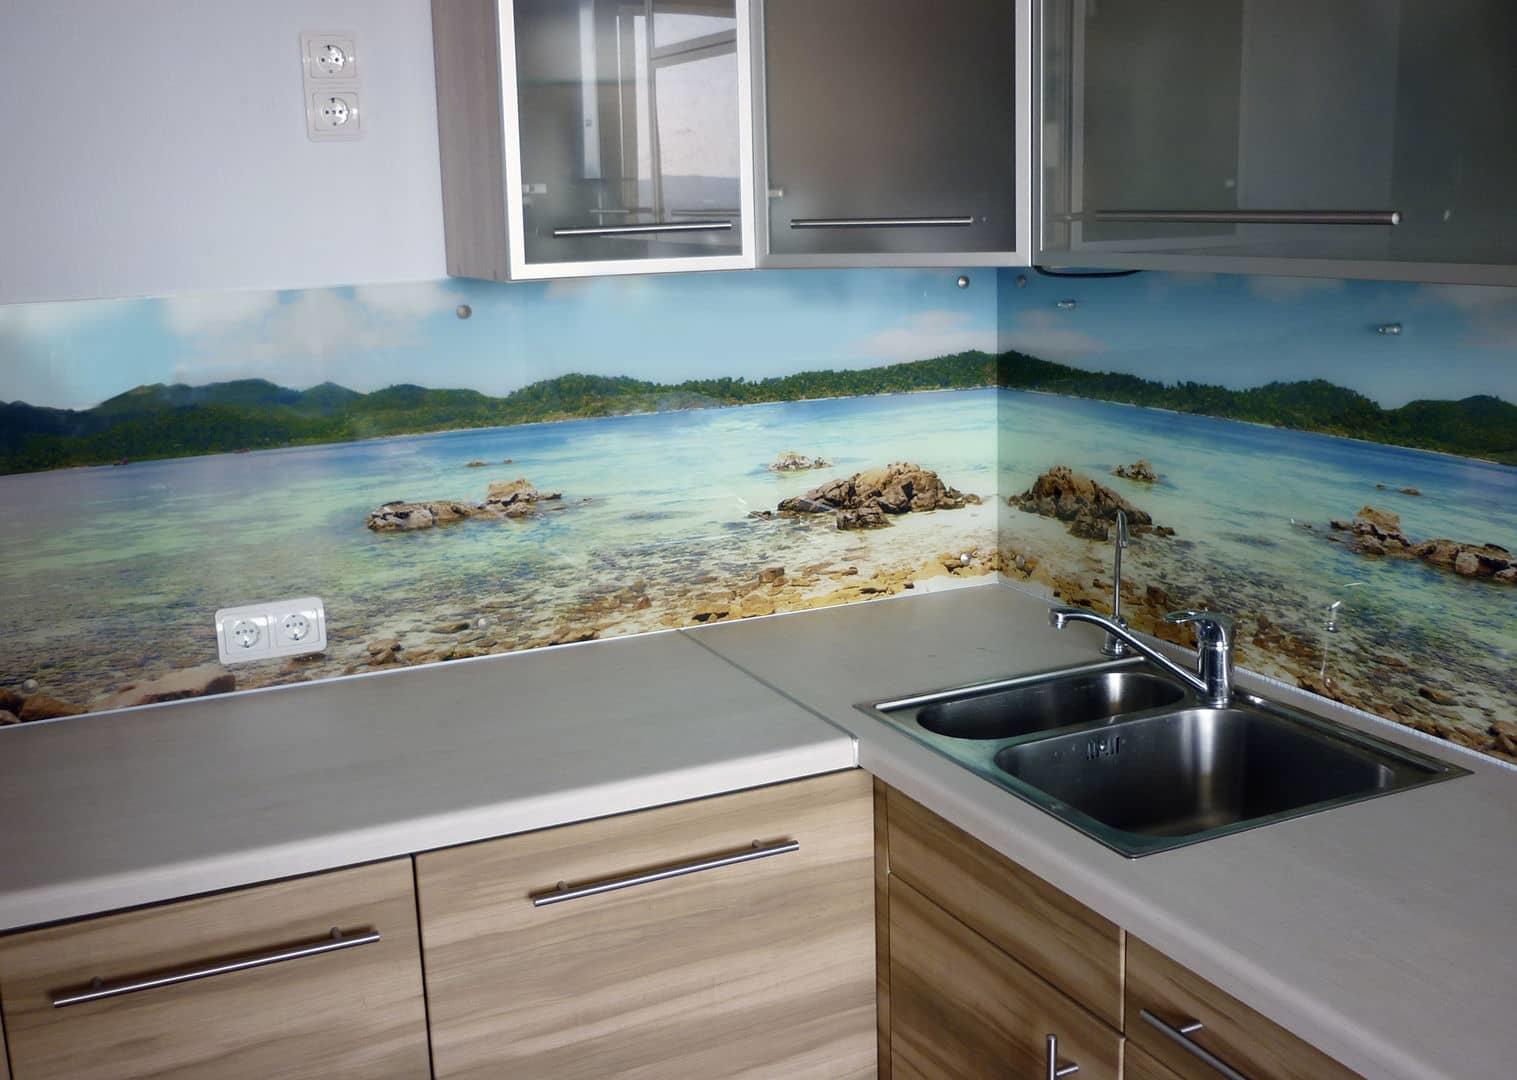 Очень роскошно и современно смотрятся стеновые панели для кухни из стекла, они способны украсить любой интерьер